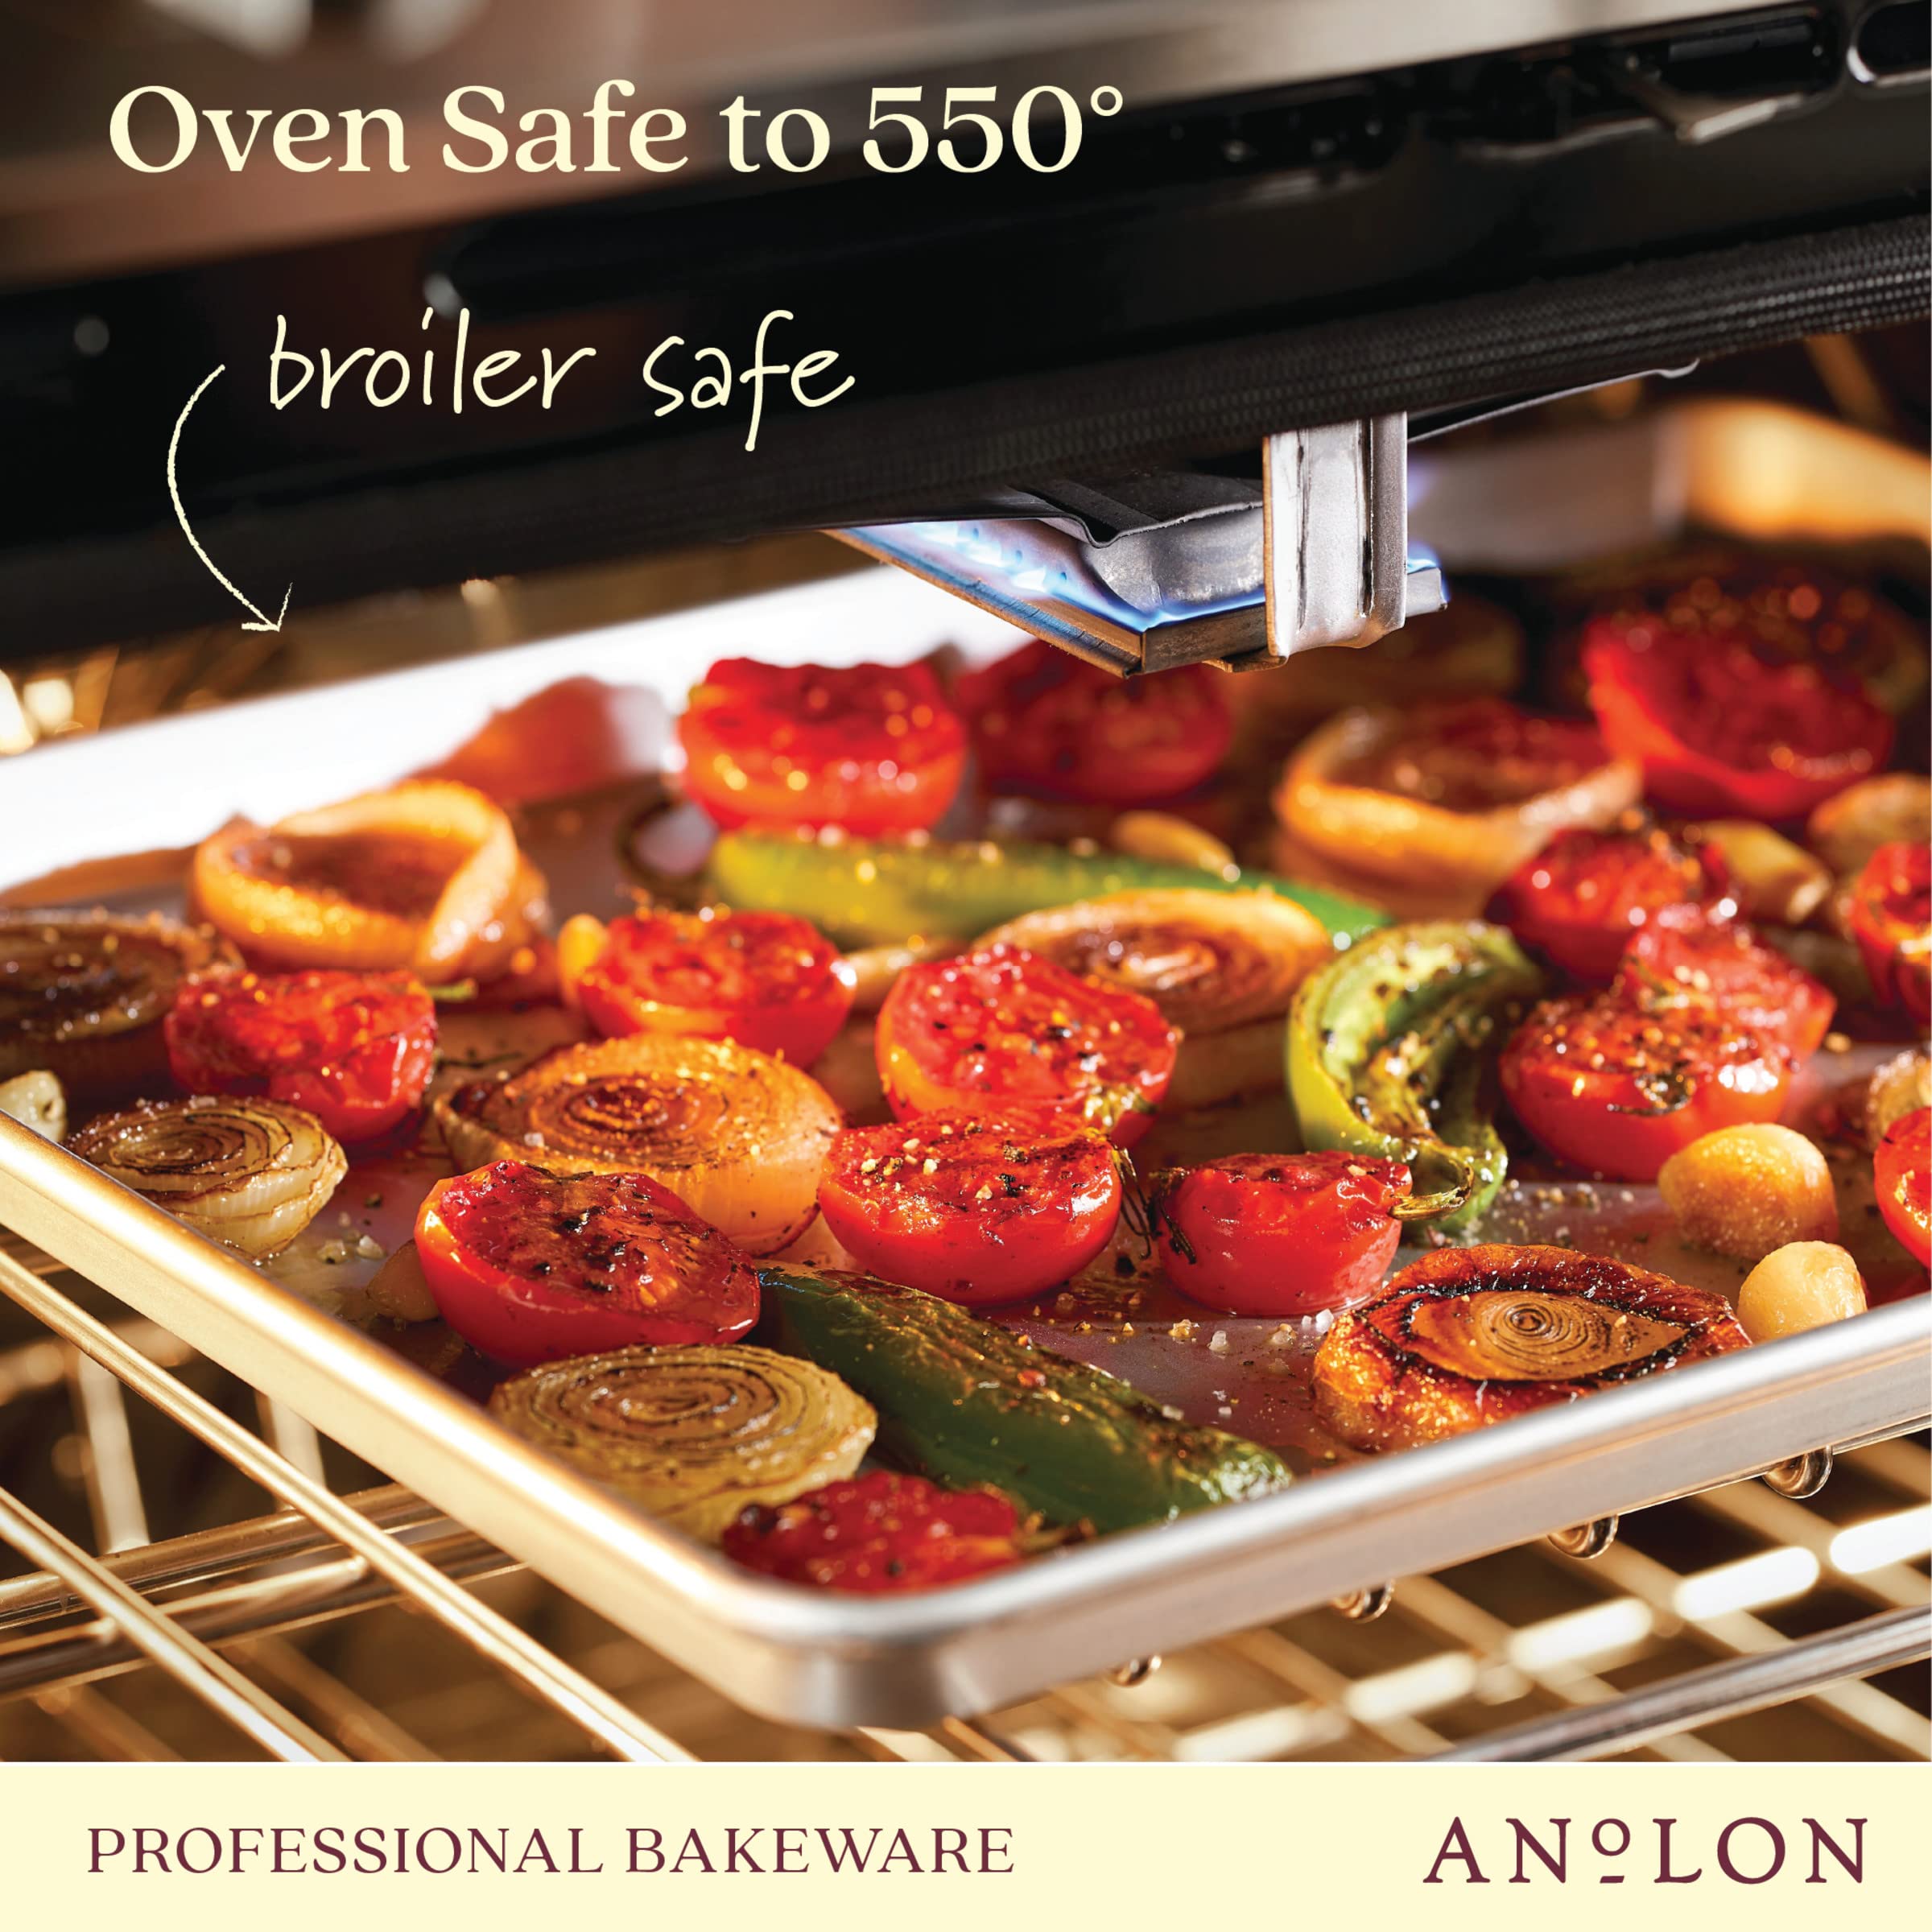 Anolon Pro-Bake Aluminized Steel Bakeware Set, 6 Piece - Silver